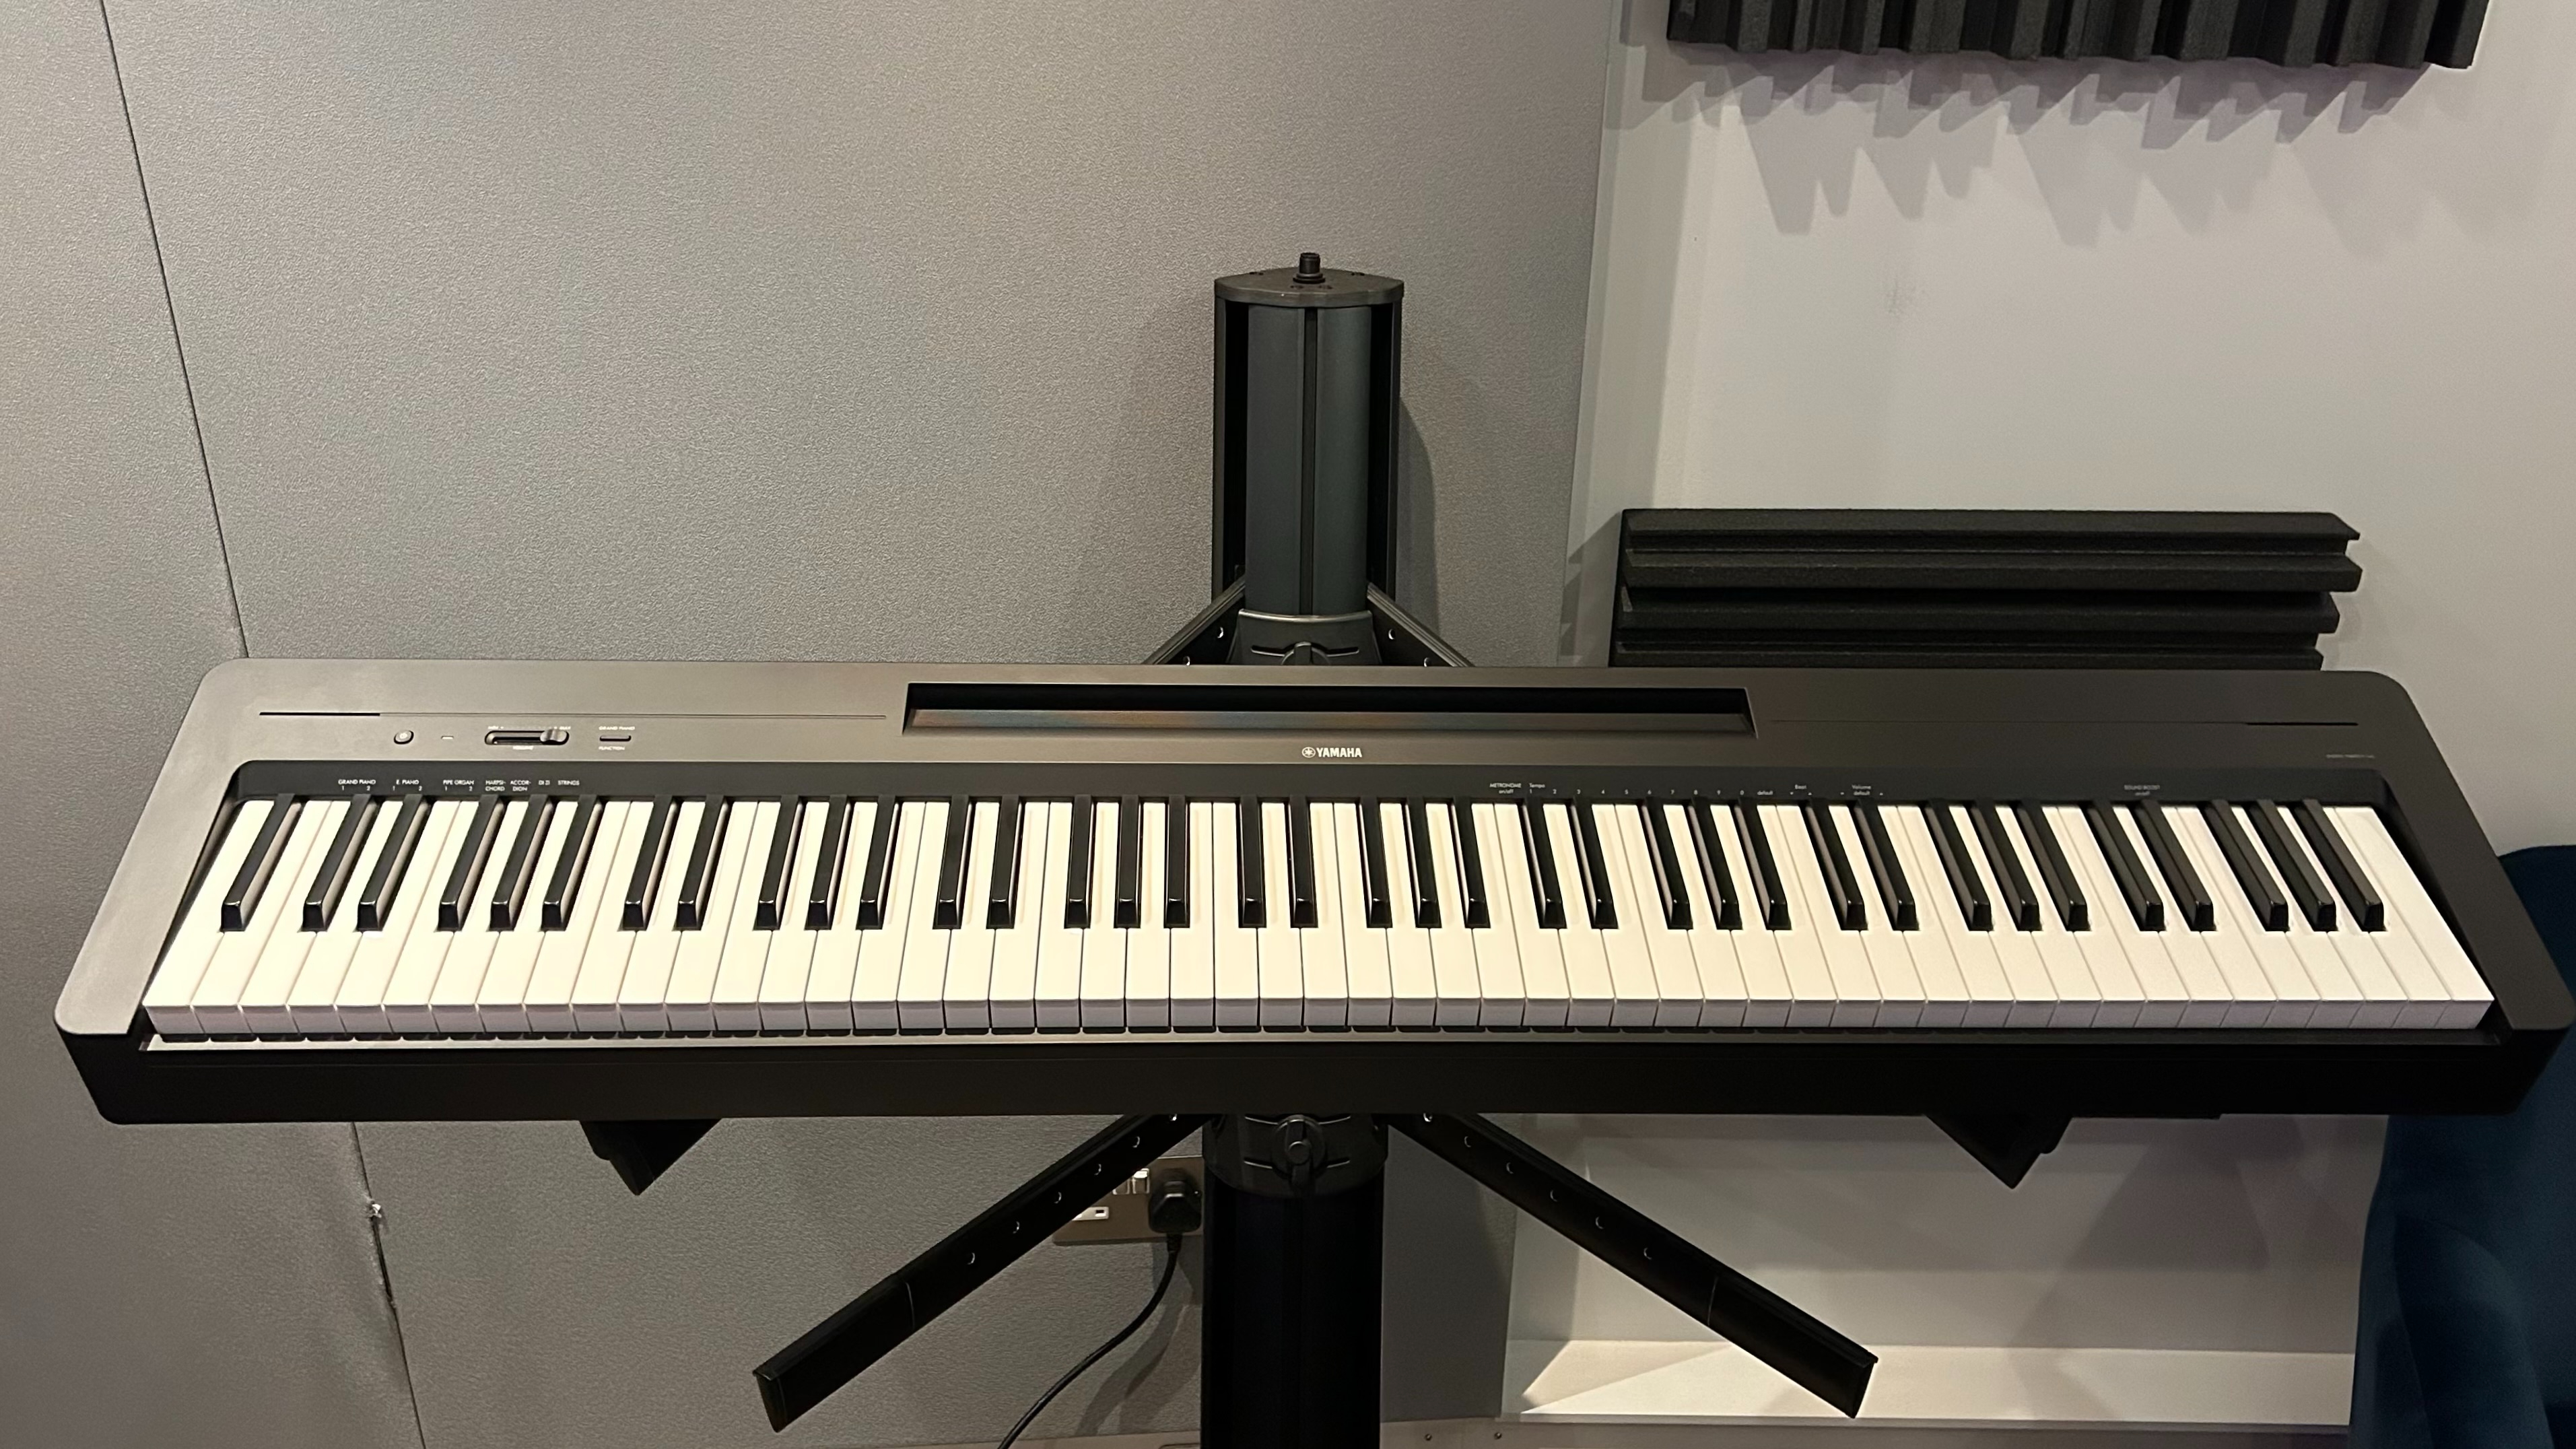 Yamaha P-145 digital piano review